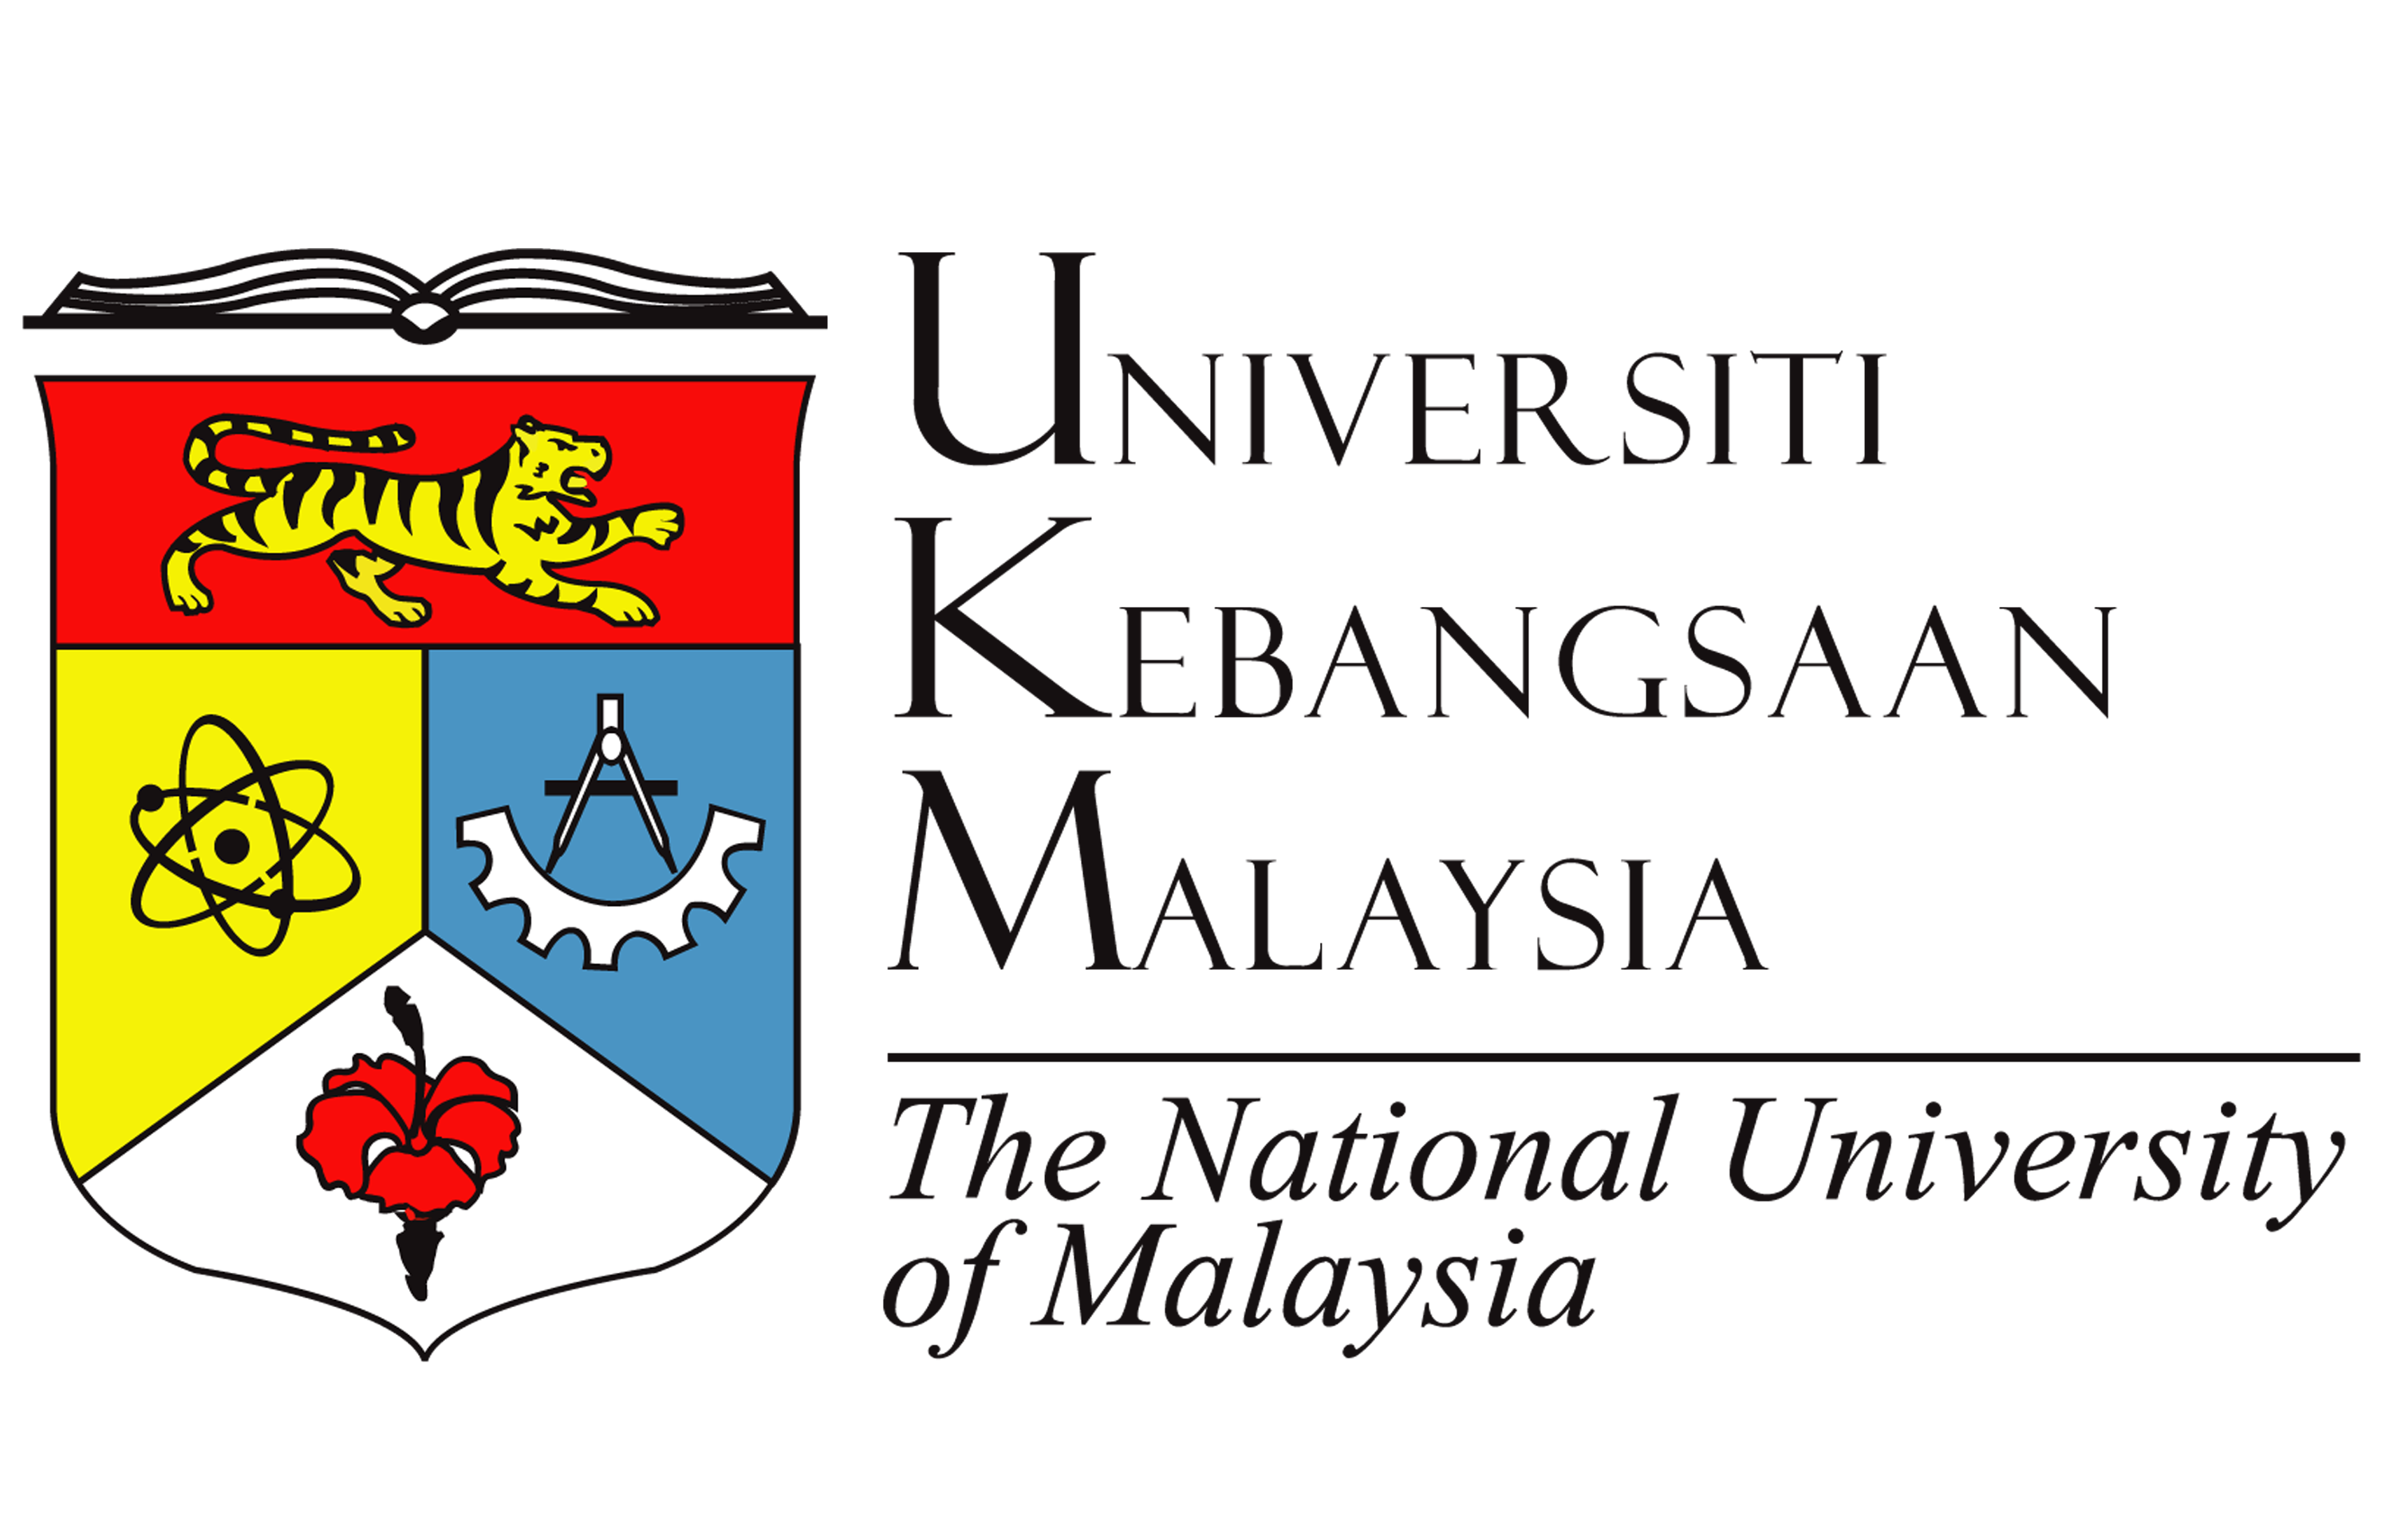 UKM National University of Malaysia